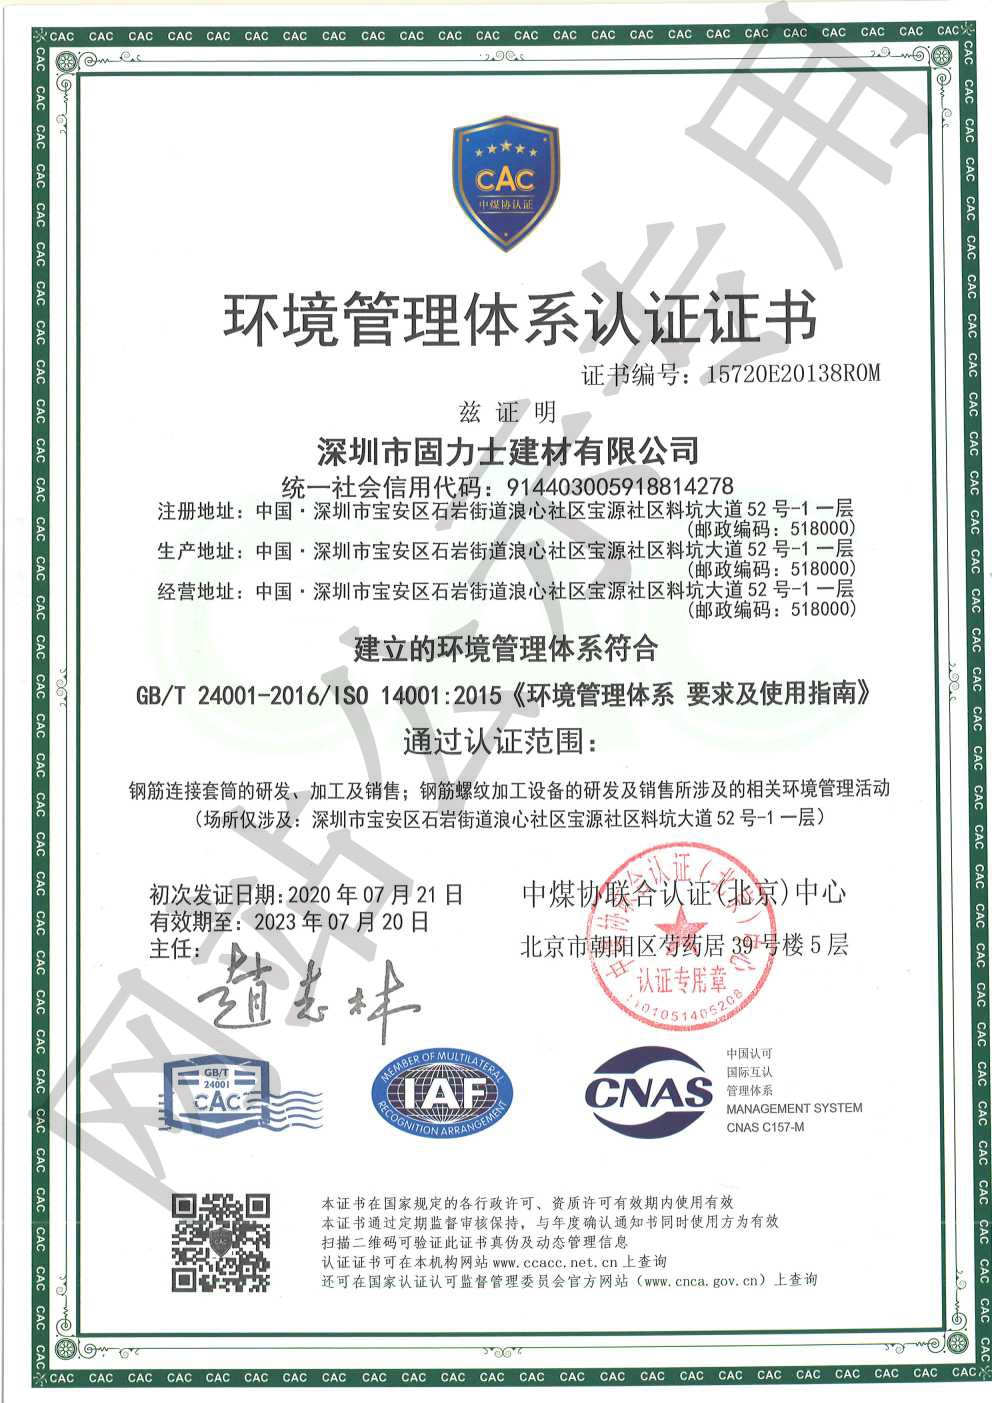 渭滨ISO14001证书